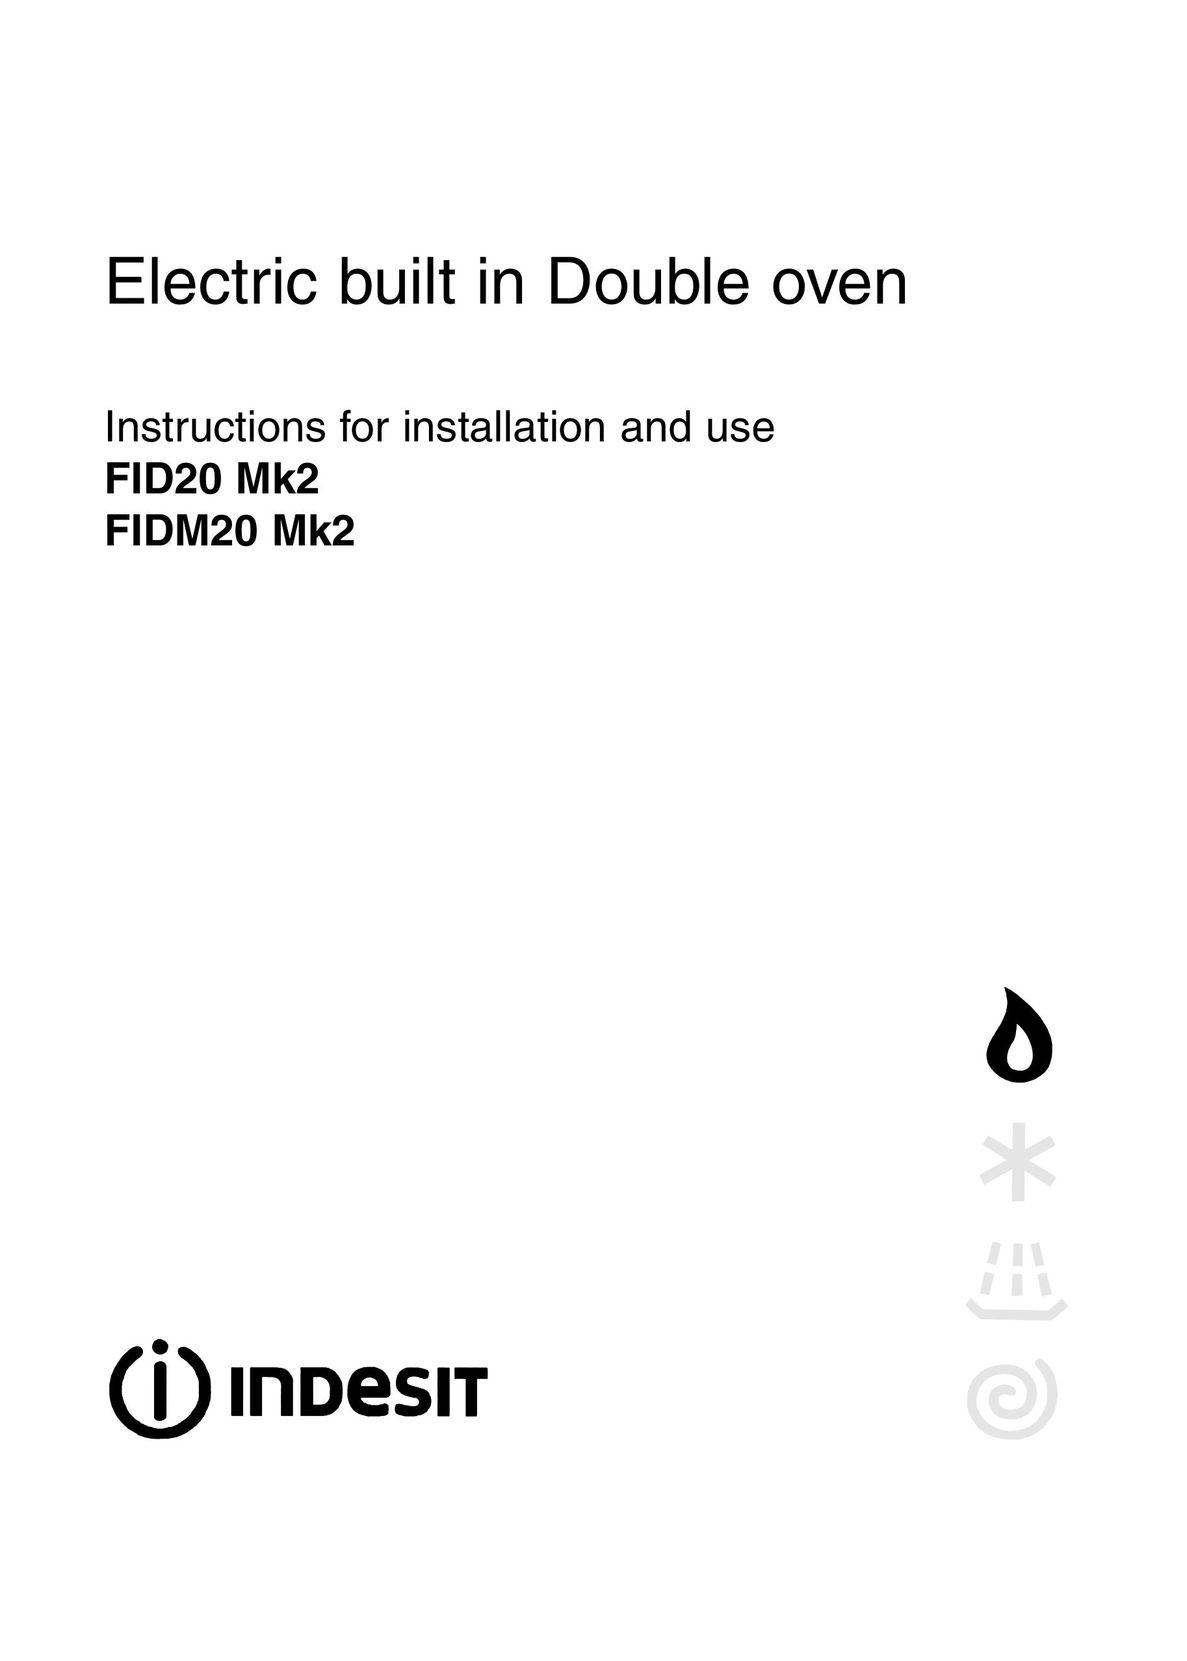 Indesit FID20 Mk2 Oven User Manual